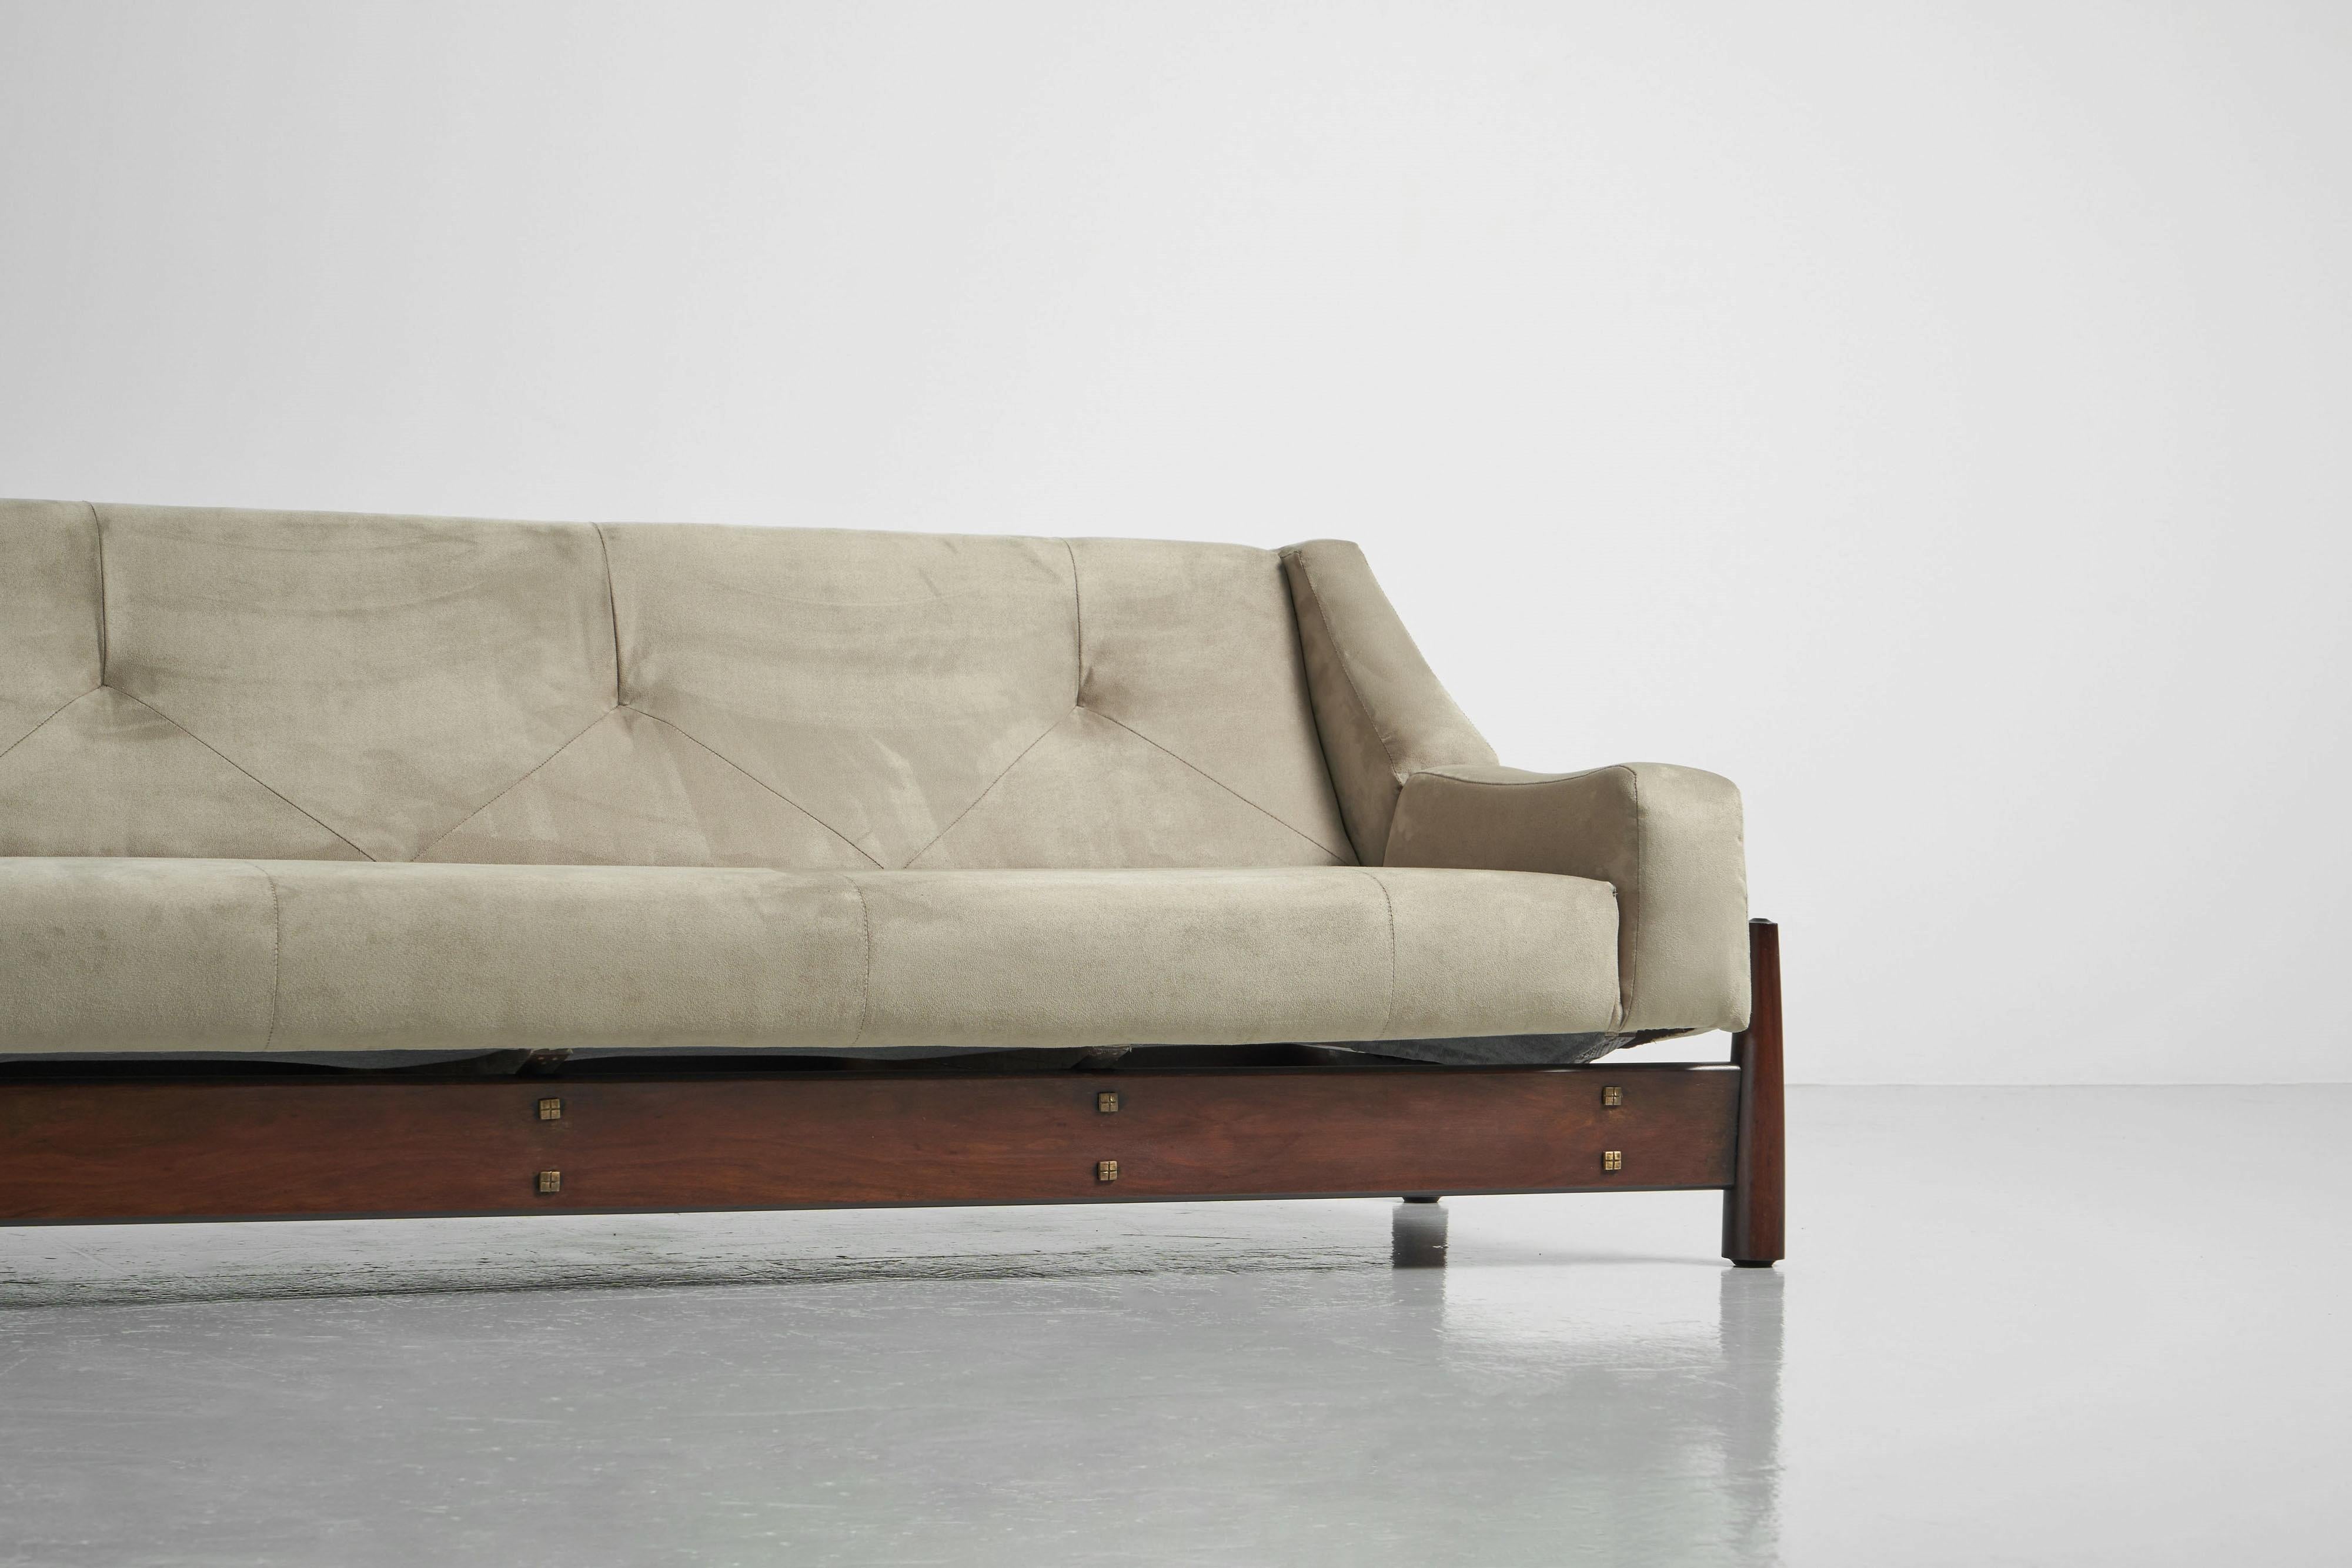 Schönes skulpturales Sofa B082, hergestellt von Moveis Cimo in Brasilien im Jahr 1960. Dieses Sofa ist wuchtig und doch verspielt, mit einem starken Holzrahmen aus Jatoba-Holz. Der Rahmen hat die Form eines Rechtecks, und an jeder Ecke befinden sich